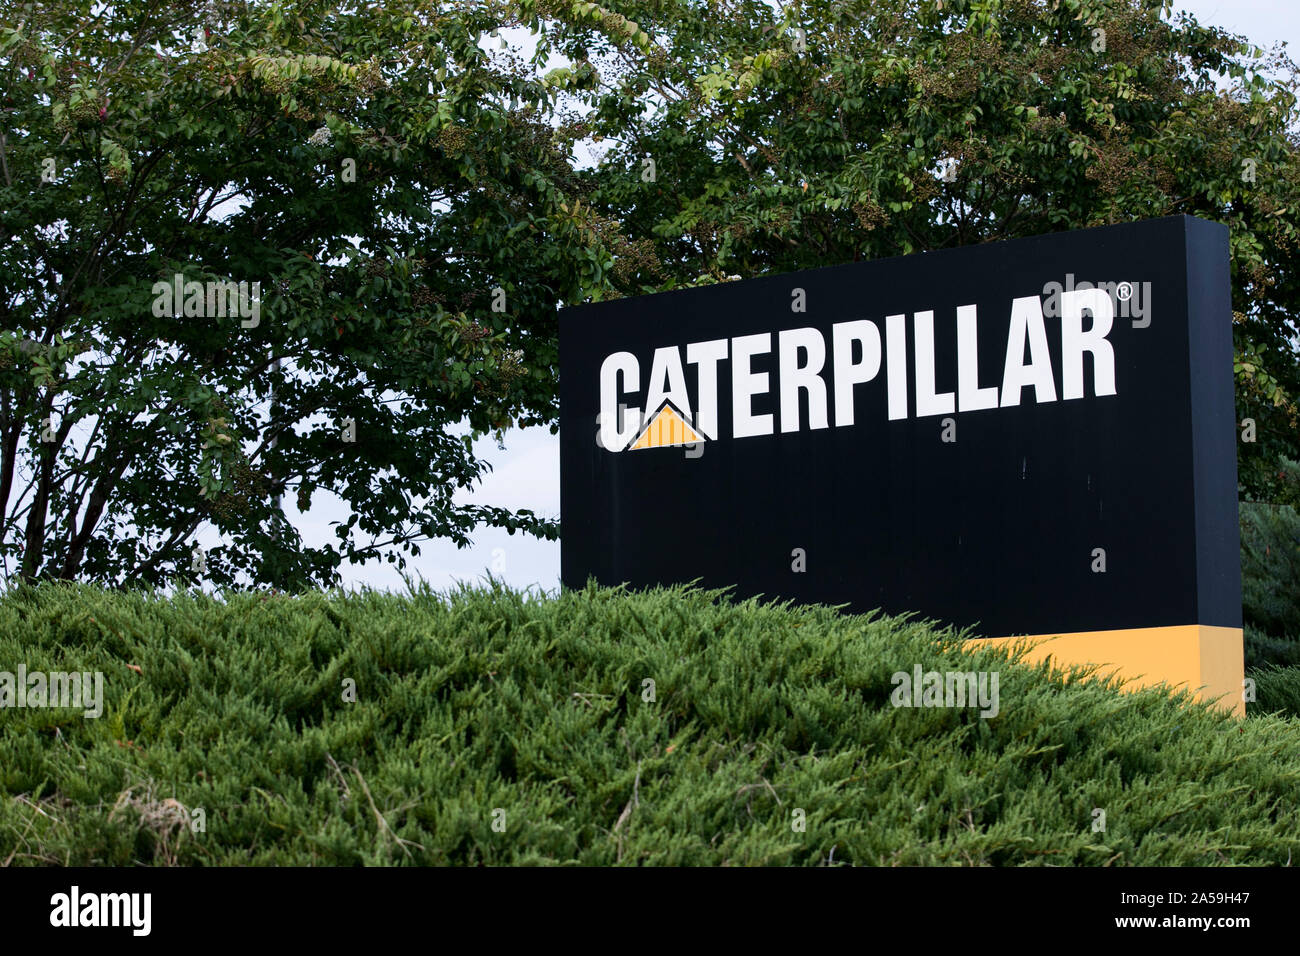 Un logo affiche à l'extérieur d'un établissement occupé par Caterpillar, Inc., dans la région de Winston-Salem, Caroline du Nord le 14 septembre 2019. Banque D'Images